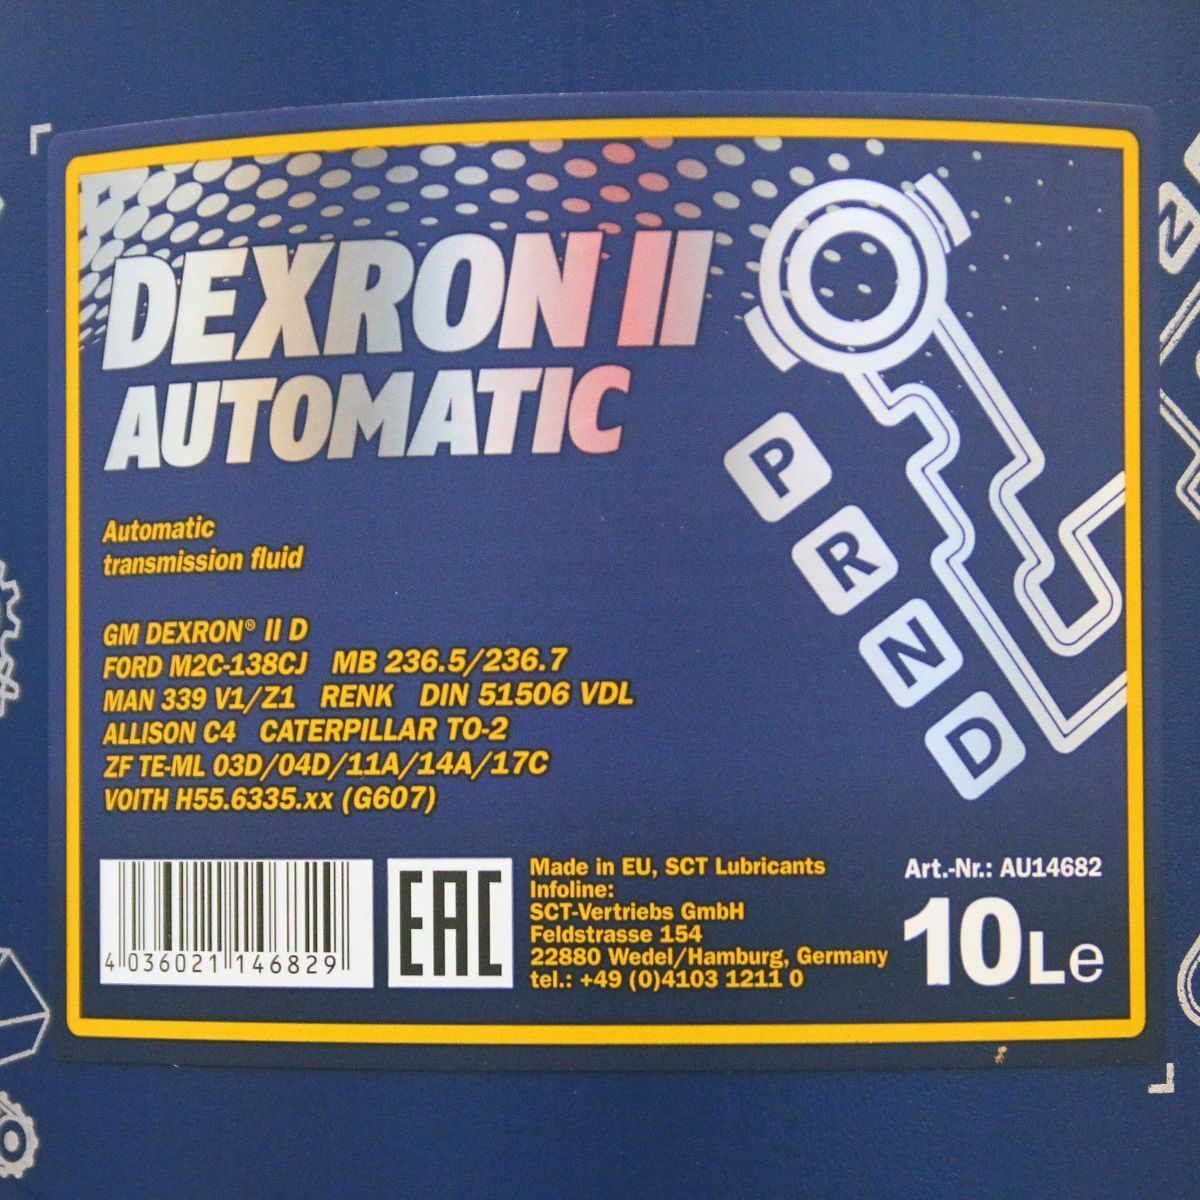 30L (3x10) MANNOL 8205 Dexron II D Automatic ATF MB236.5/236.7 Getriebeöl Servolenkung